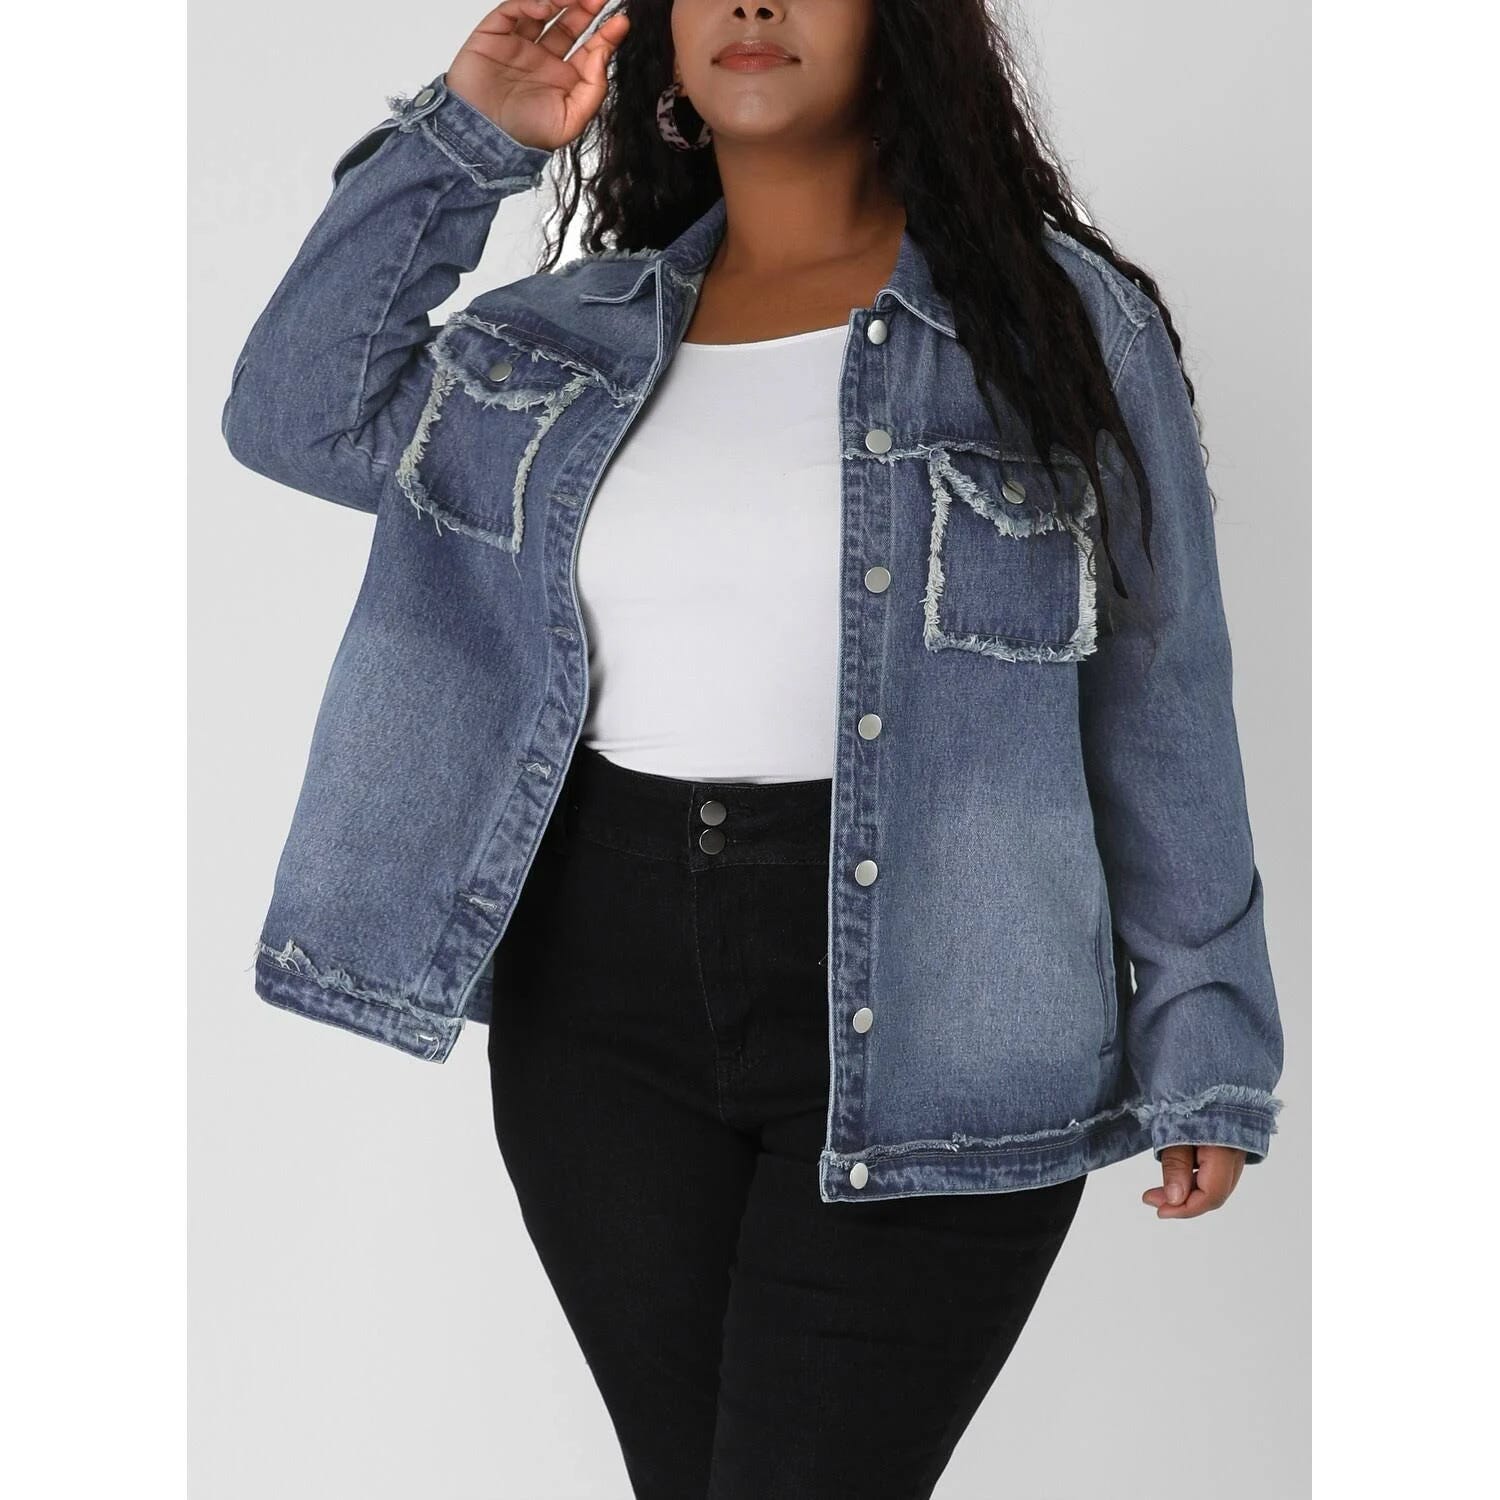 Frayed Plus Size Denim Jacket for Women | Image